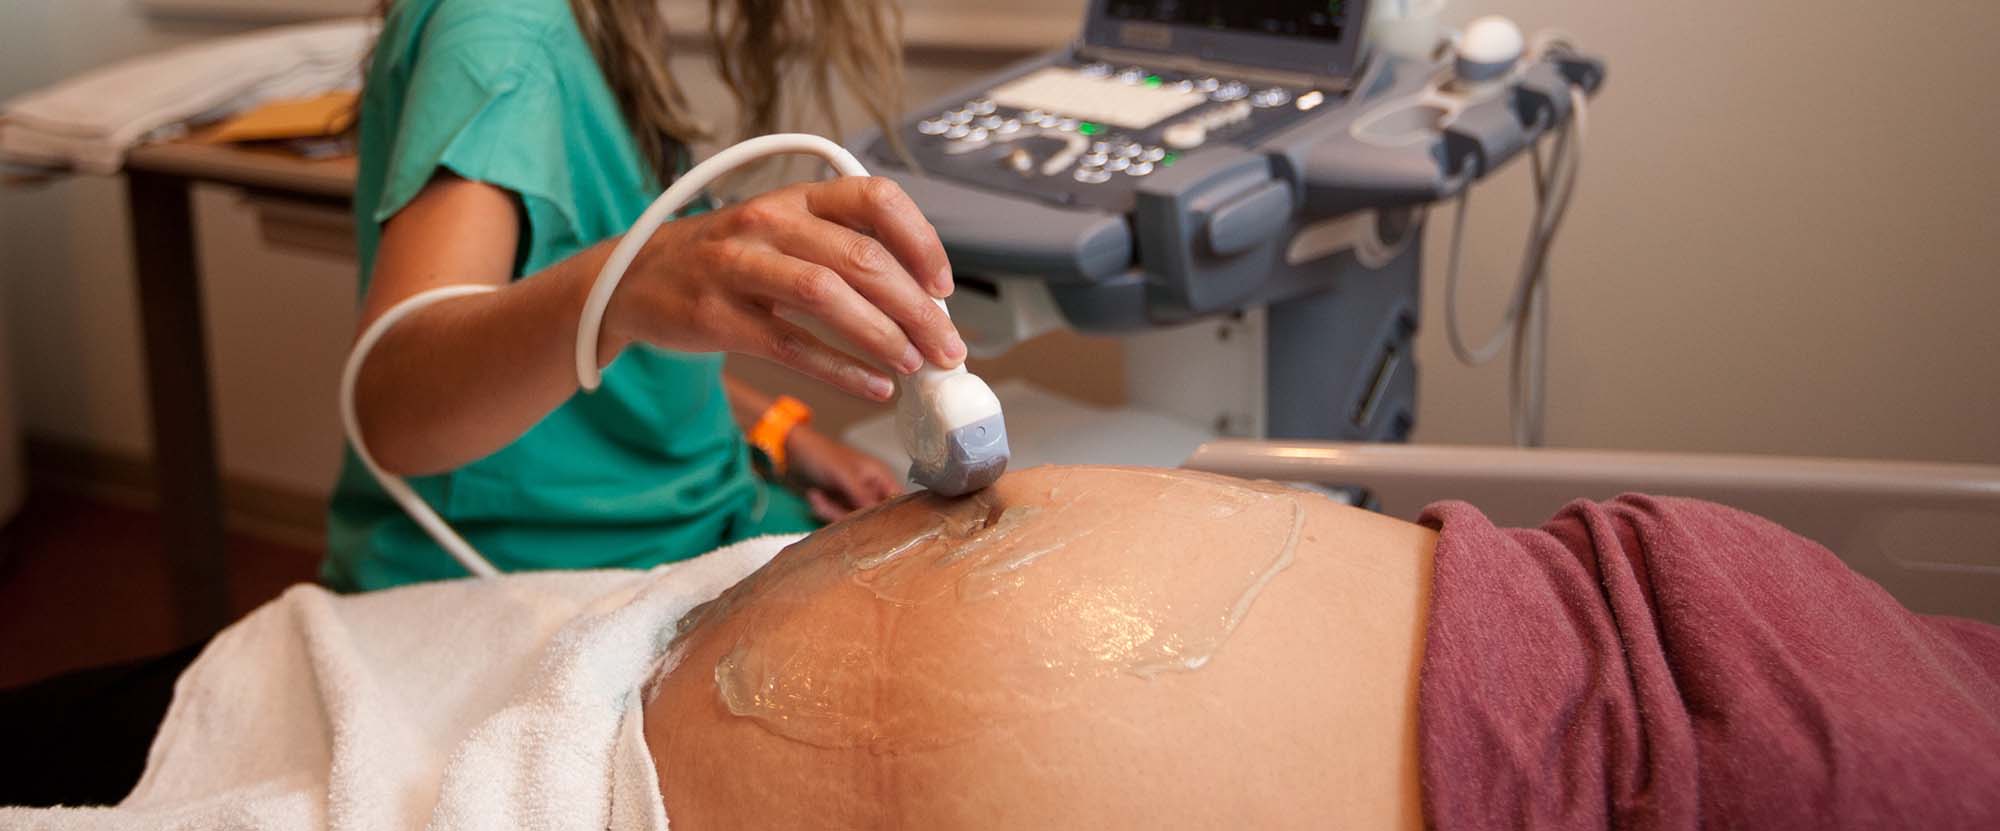 Une femme enceinte subissant une échographie